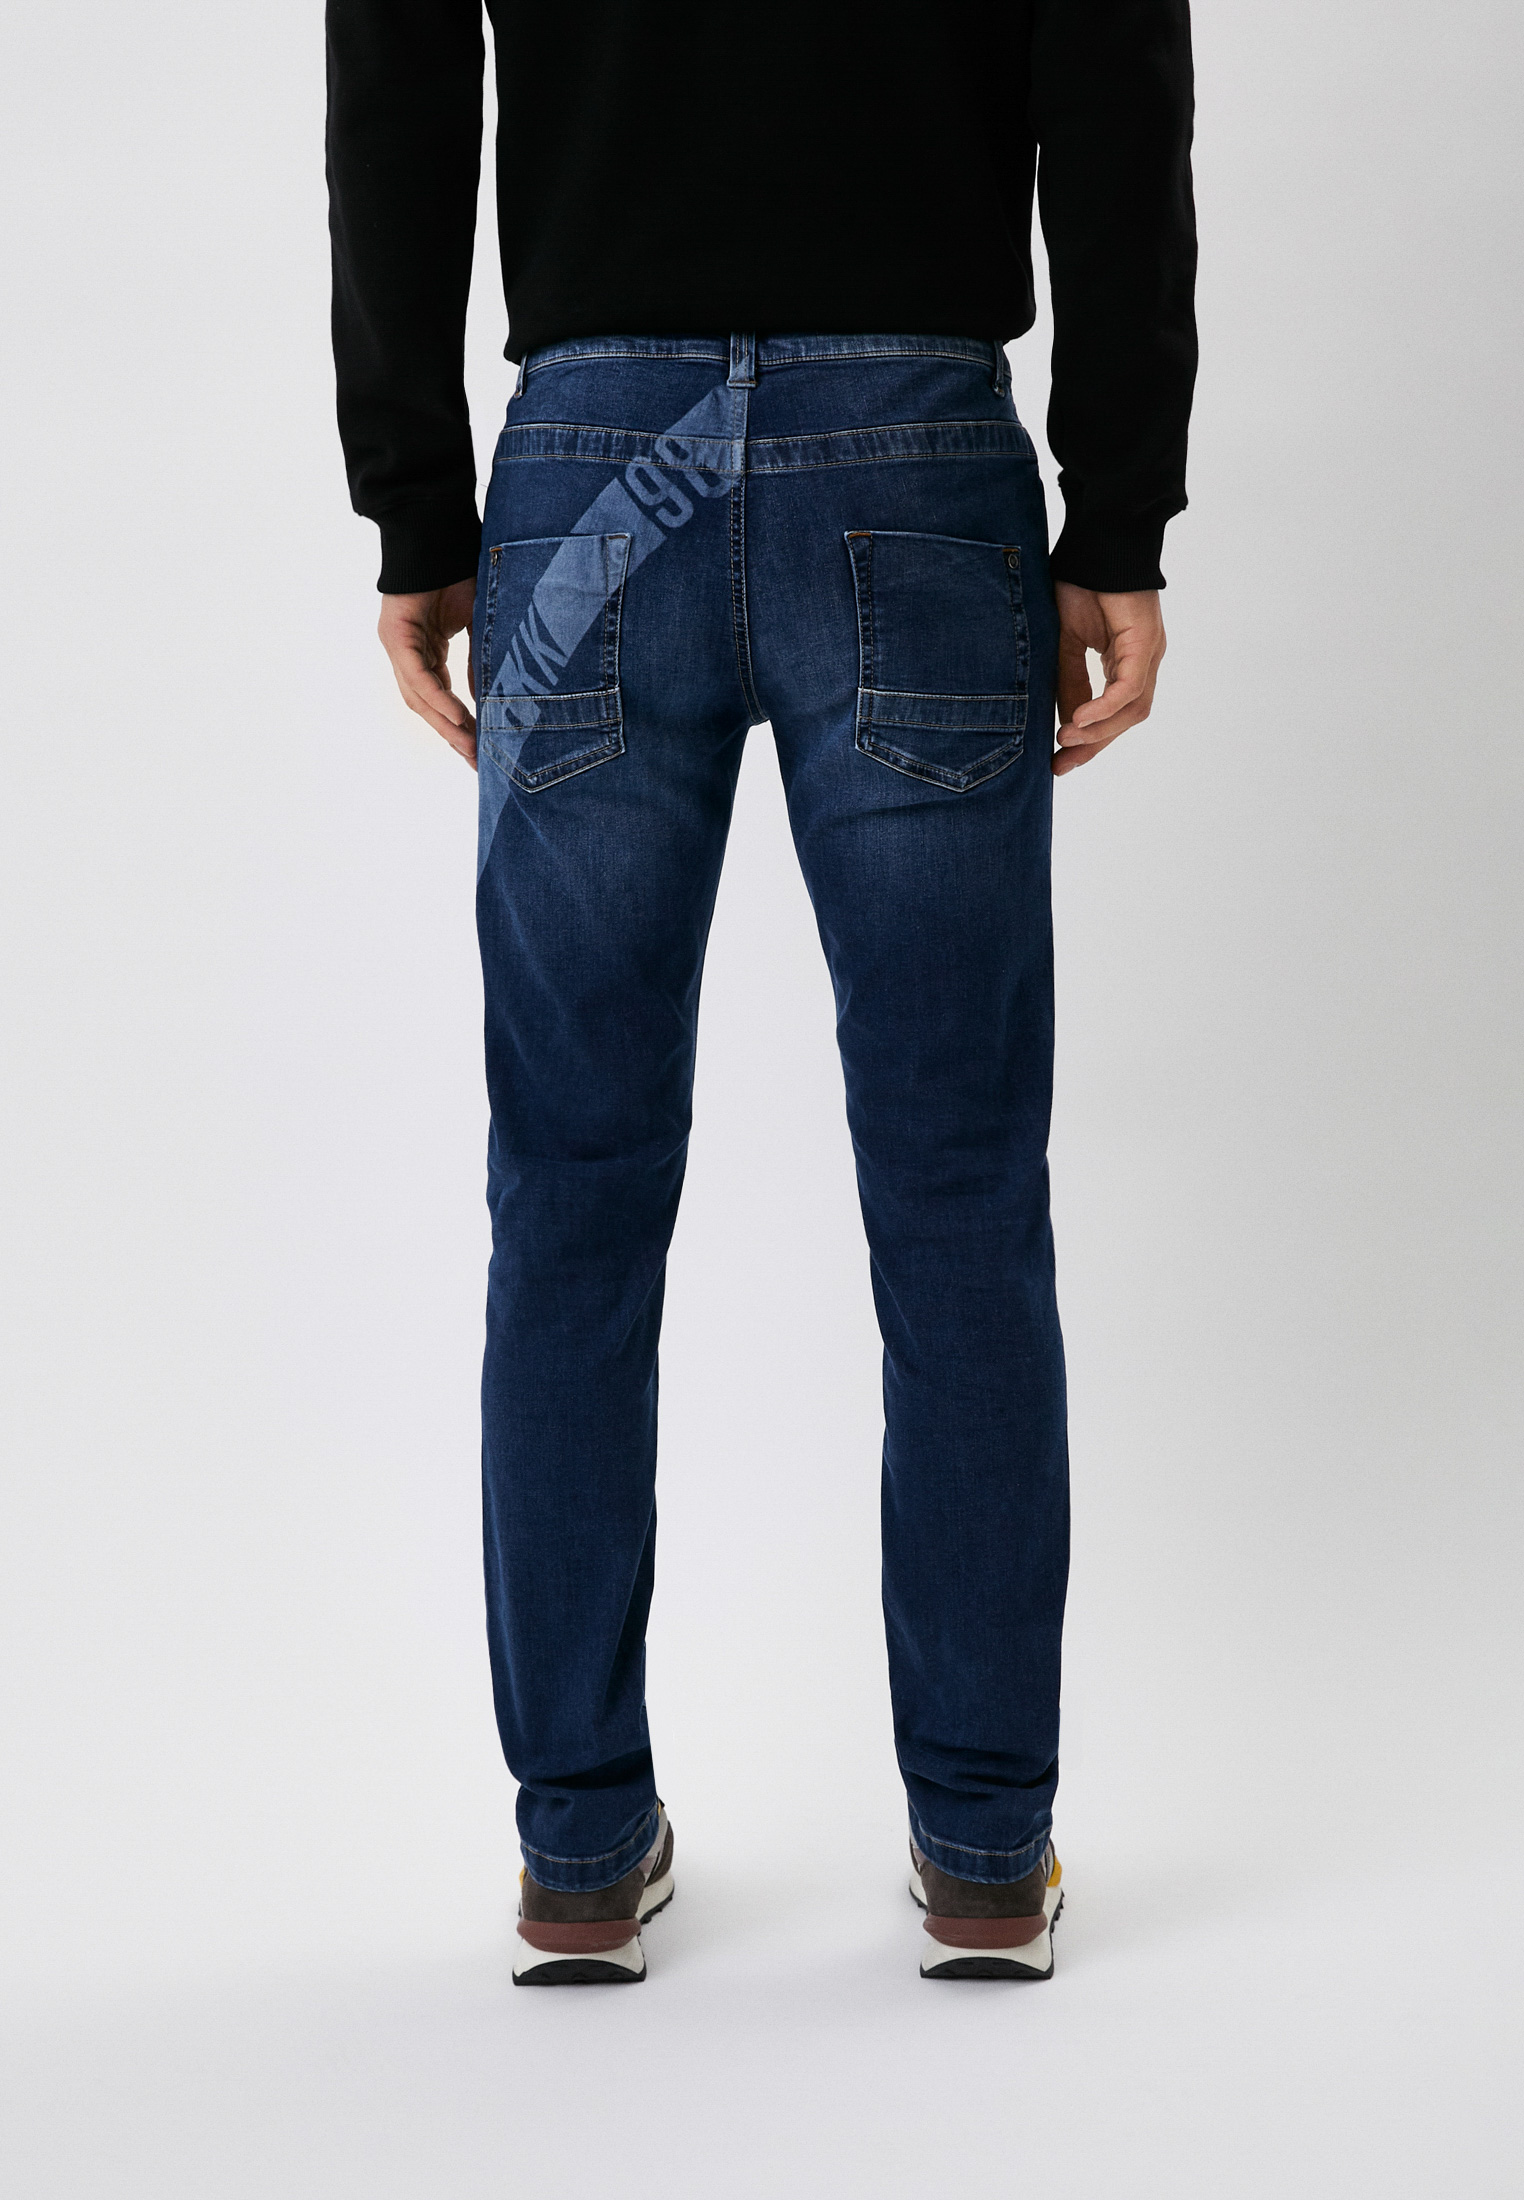 Мужские прямые джинсы Bikkembergs (Биккембергс) C Q 101 1B S 3511: изображение 3